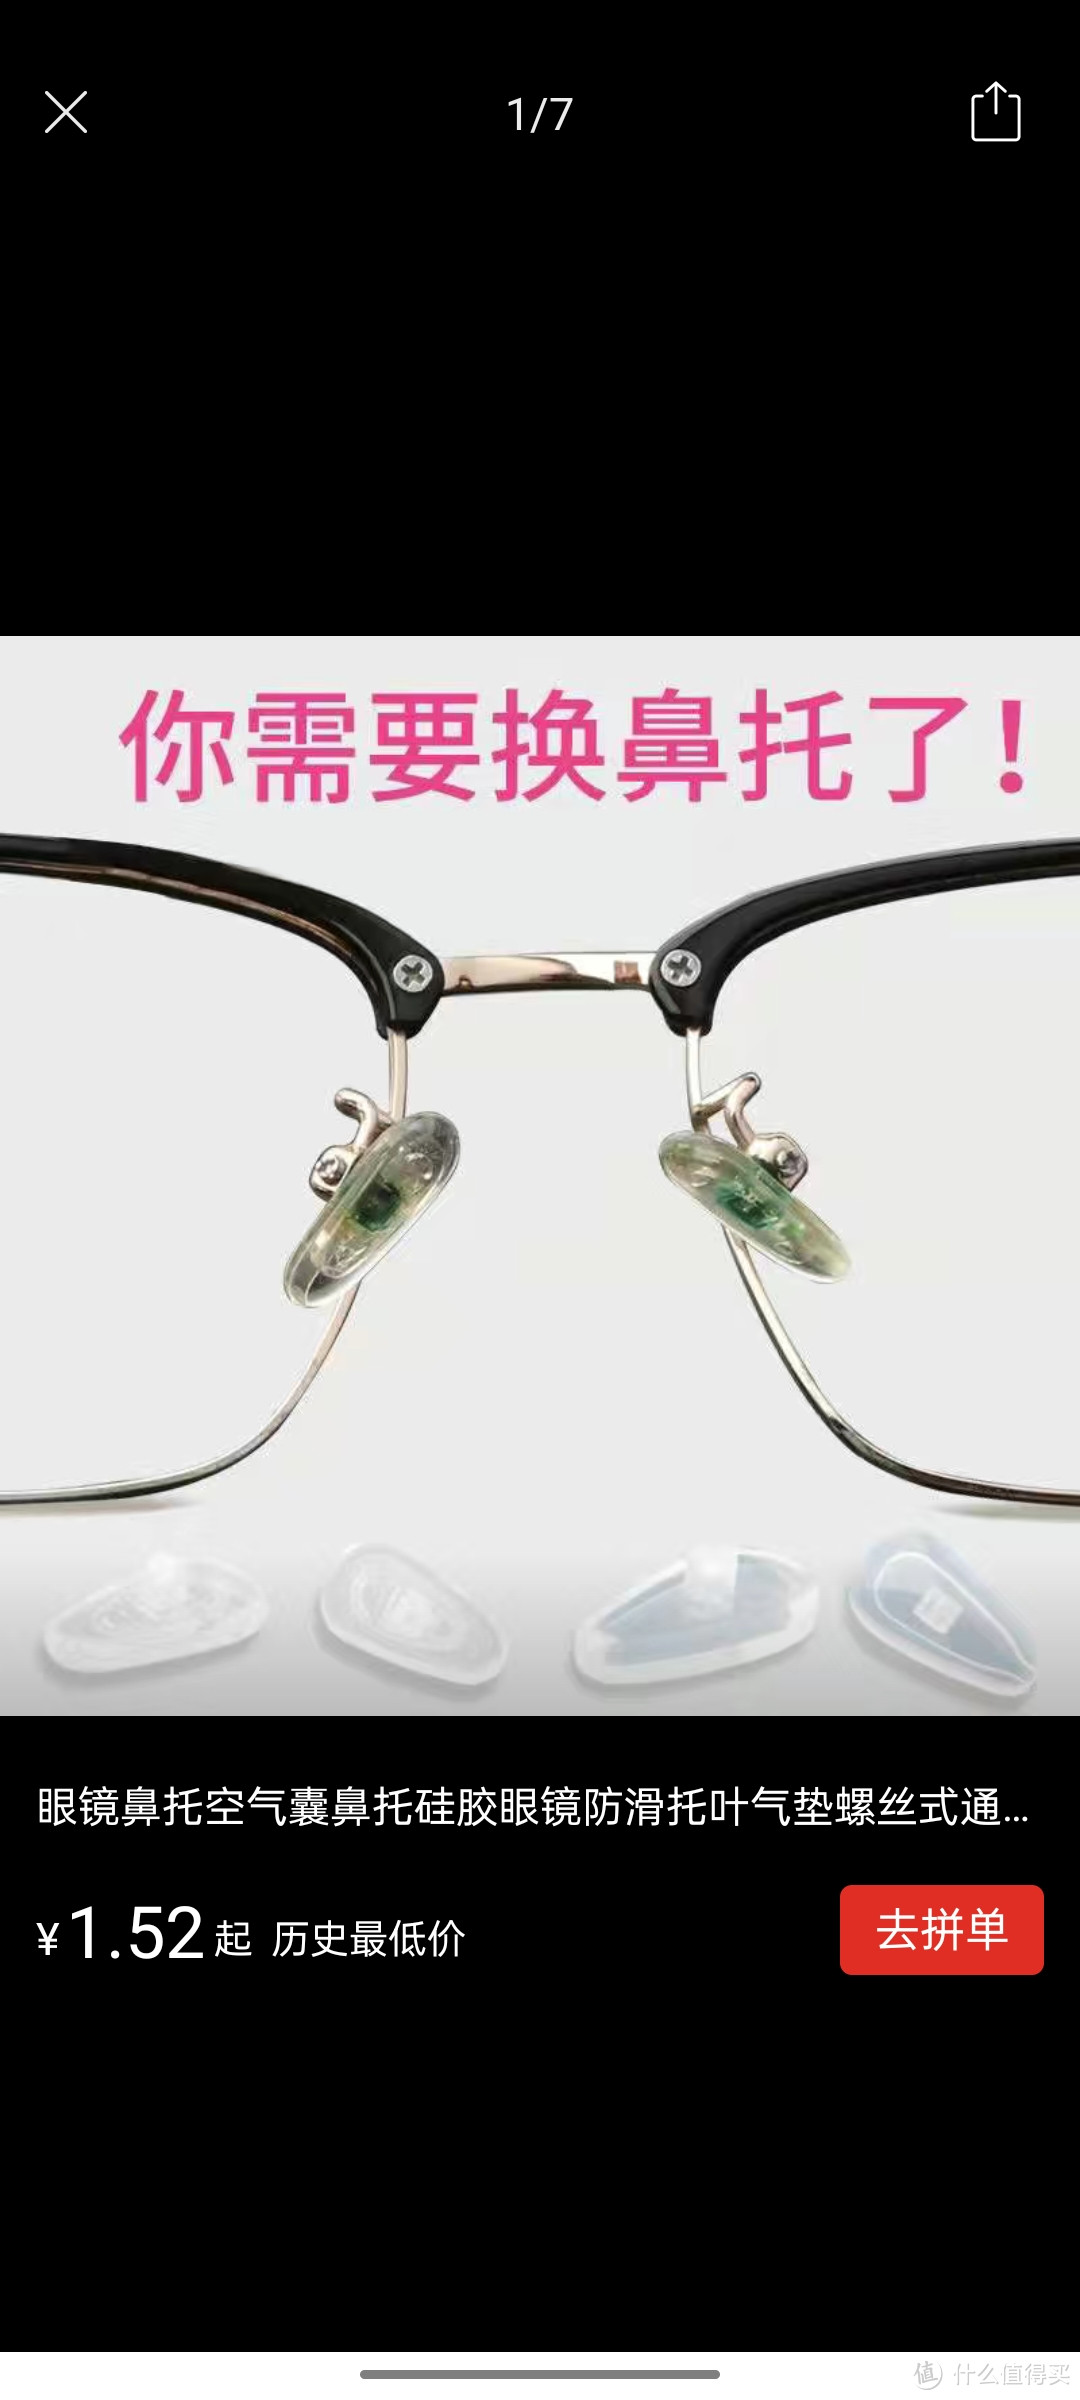 眼镜鼻托空气囊鼻托硅胶眼镜防滑托叶气垫螺丝式通用型眼镜配件